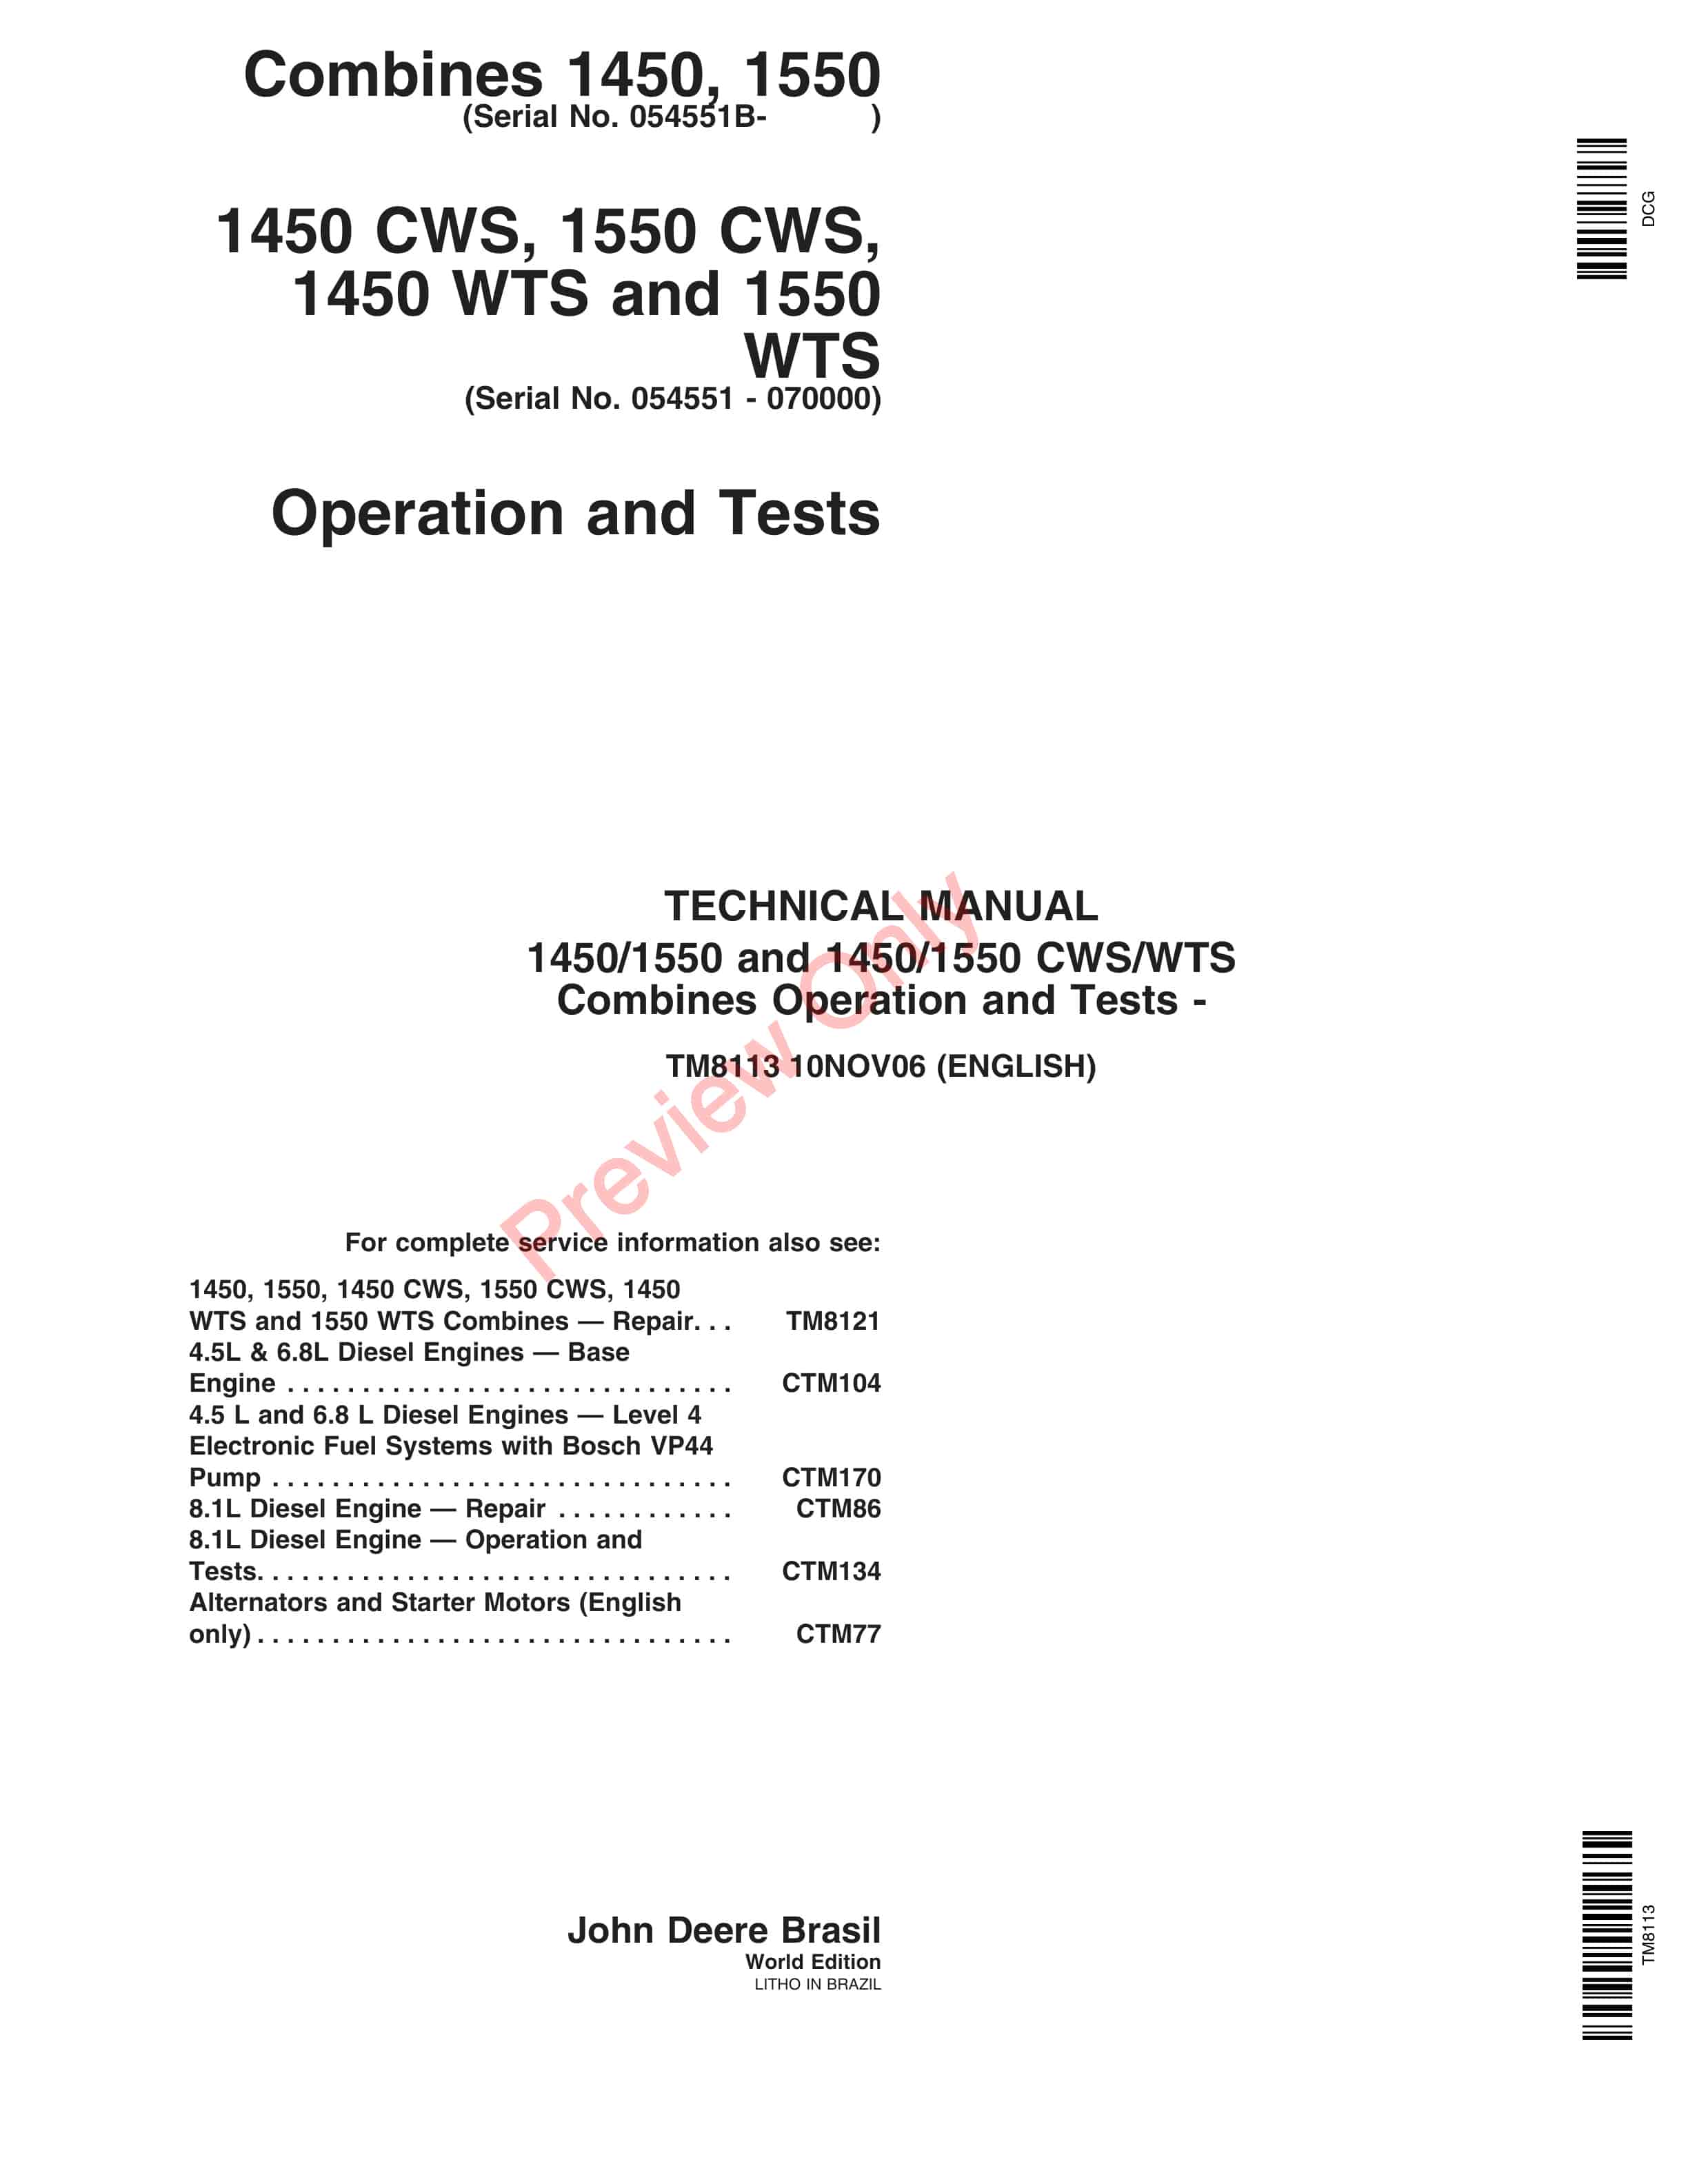 John Deere 1450, 1550, 14501550 CWS, 14501550 WTS Combines Technical Manual TM8113 10NOV06-1